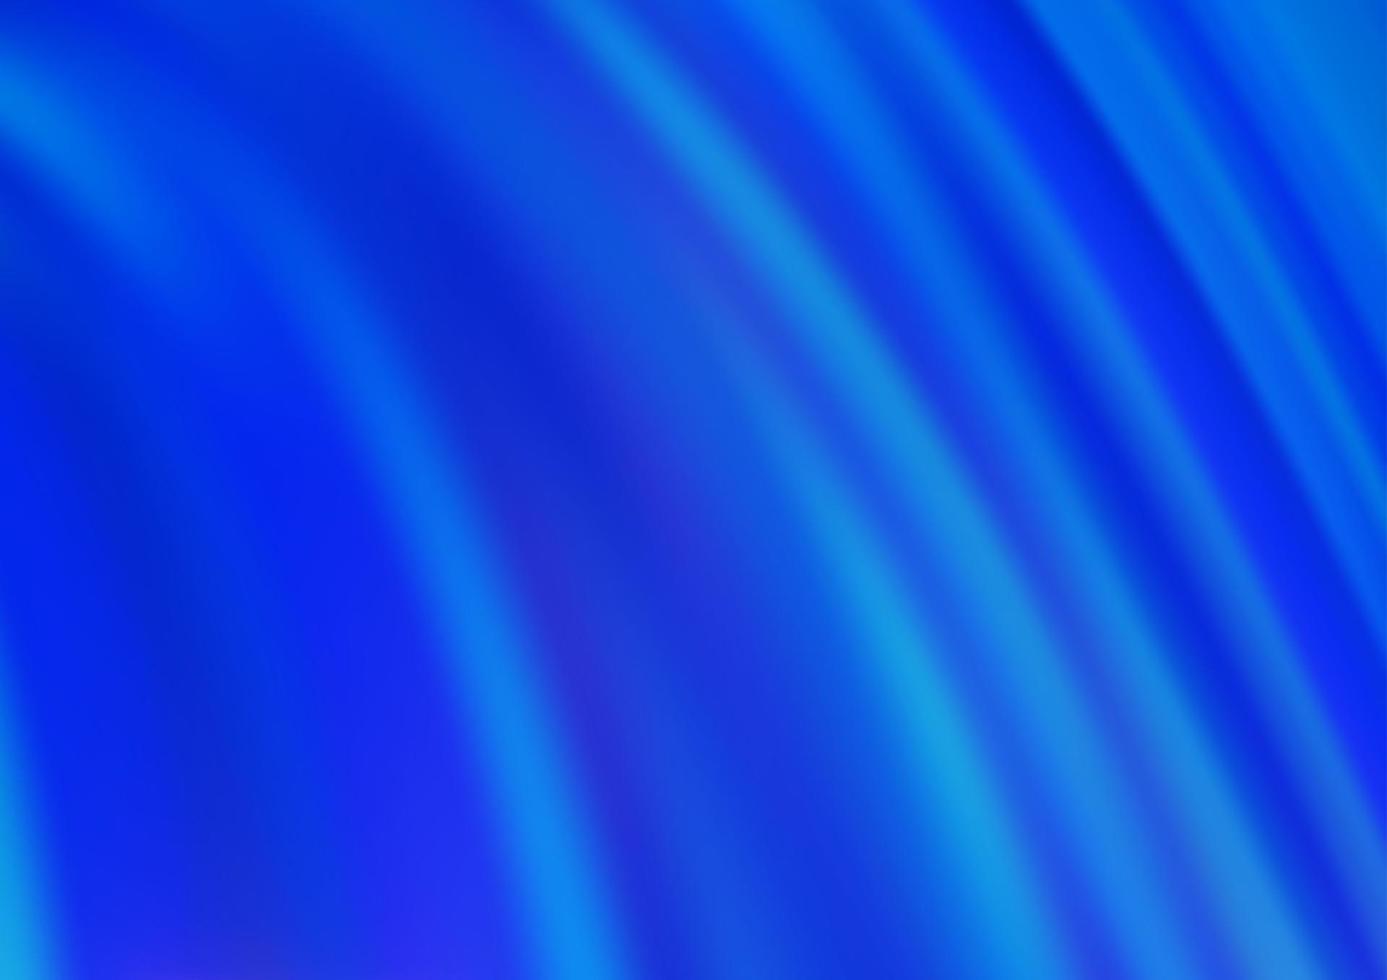 sfondo vettoriale azzurro con cerchi curvi.